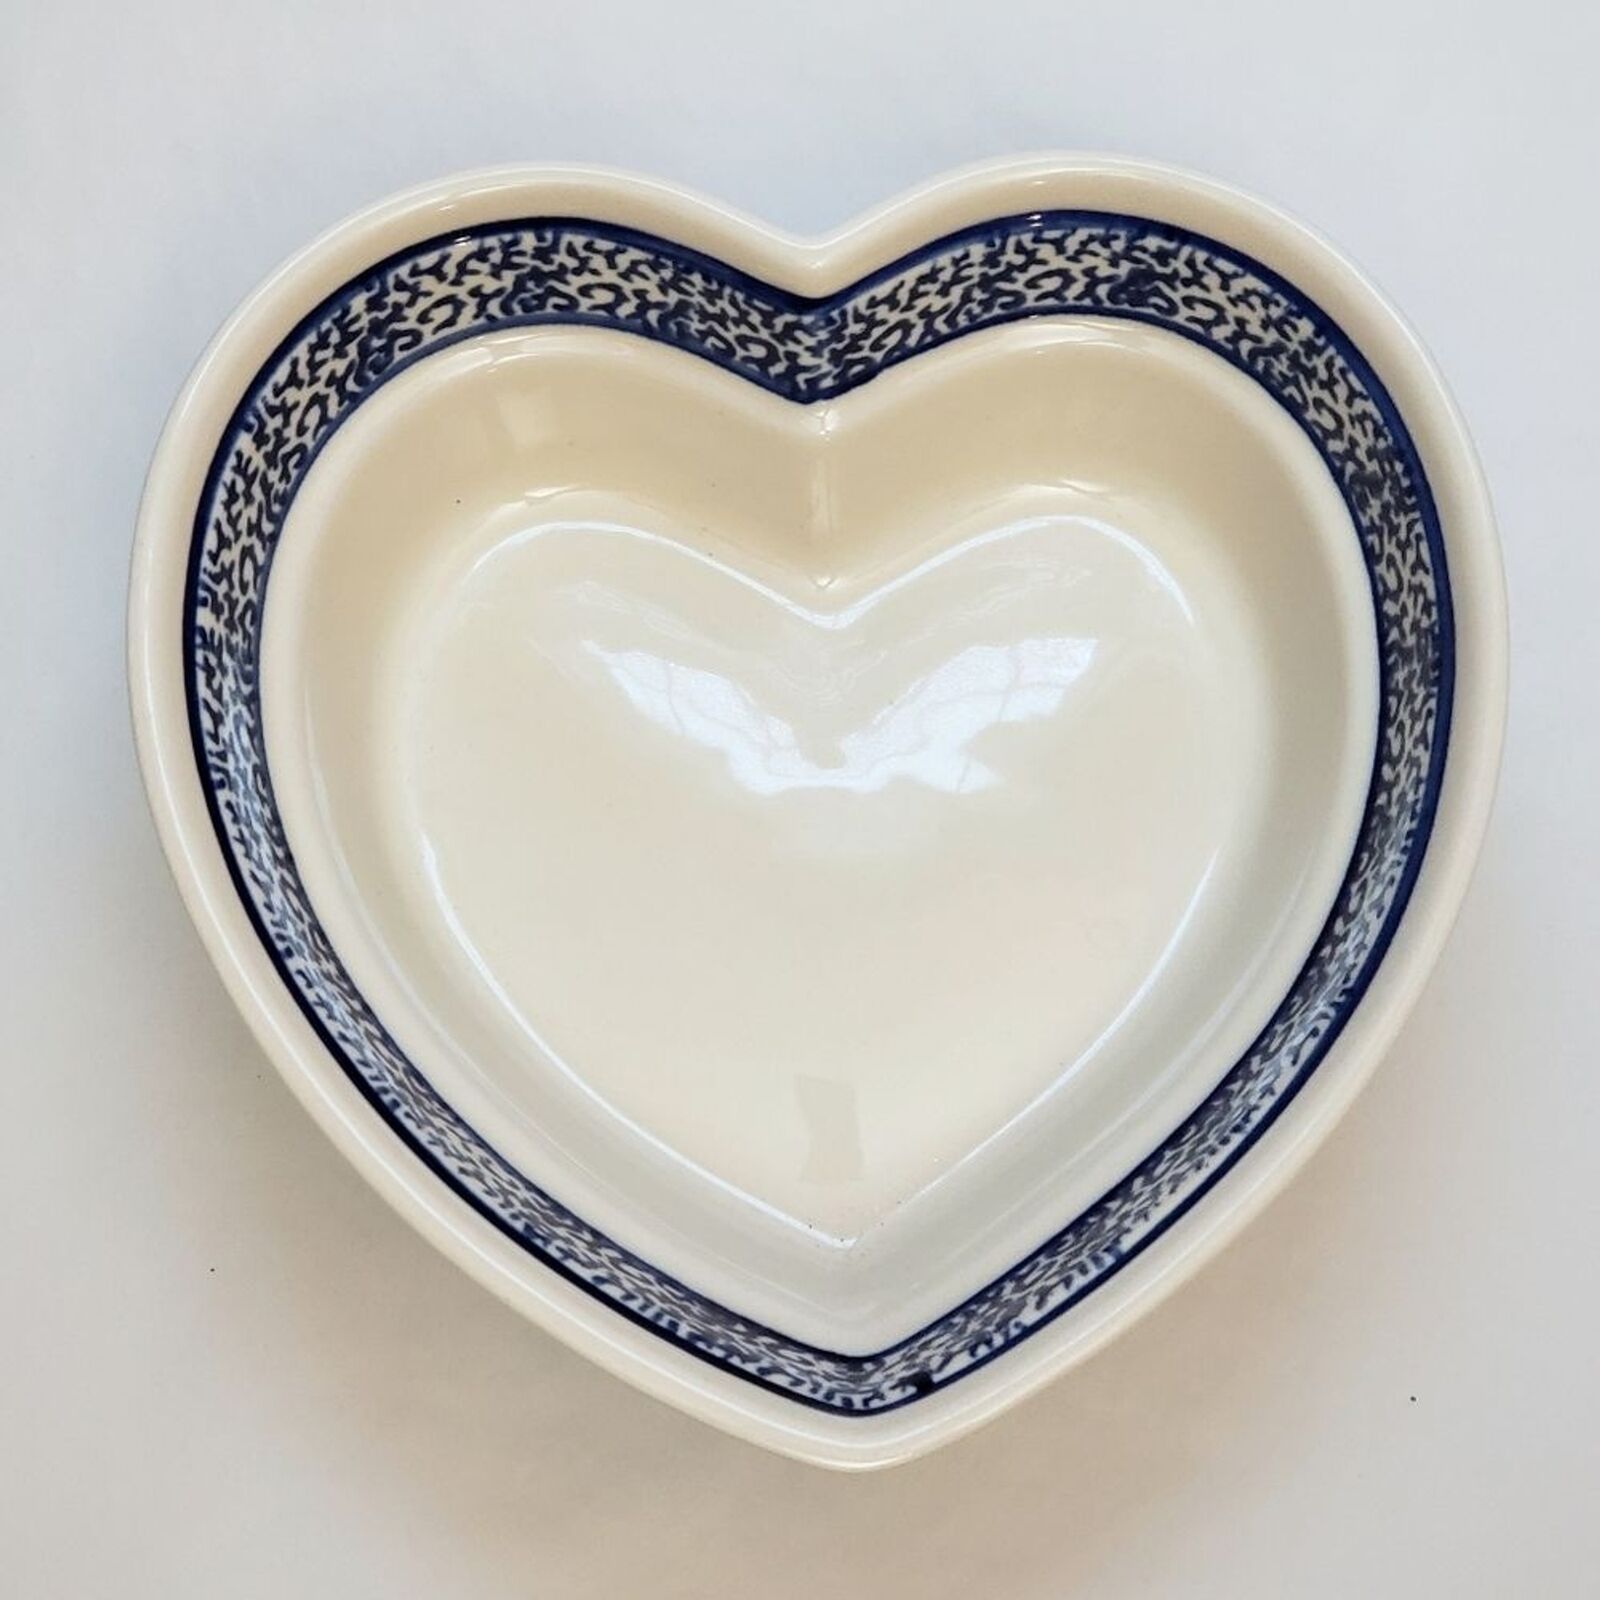 2 (TWO) Handmade Holiday Poland Heart Pottery Bakeware Bowl Dish Glazed Heart